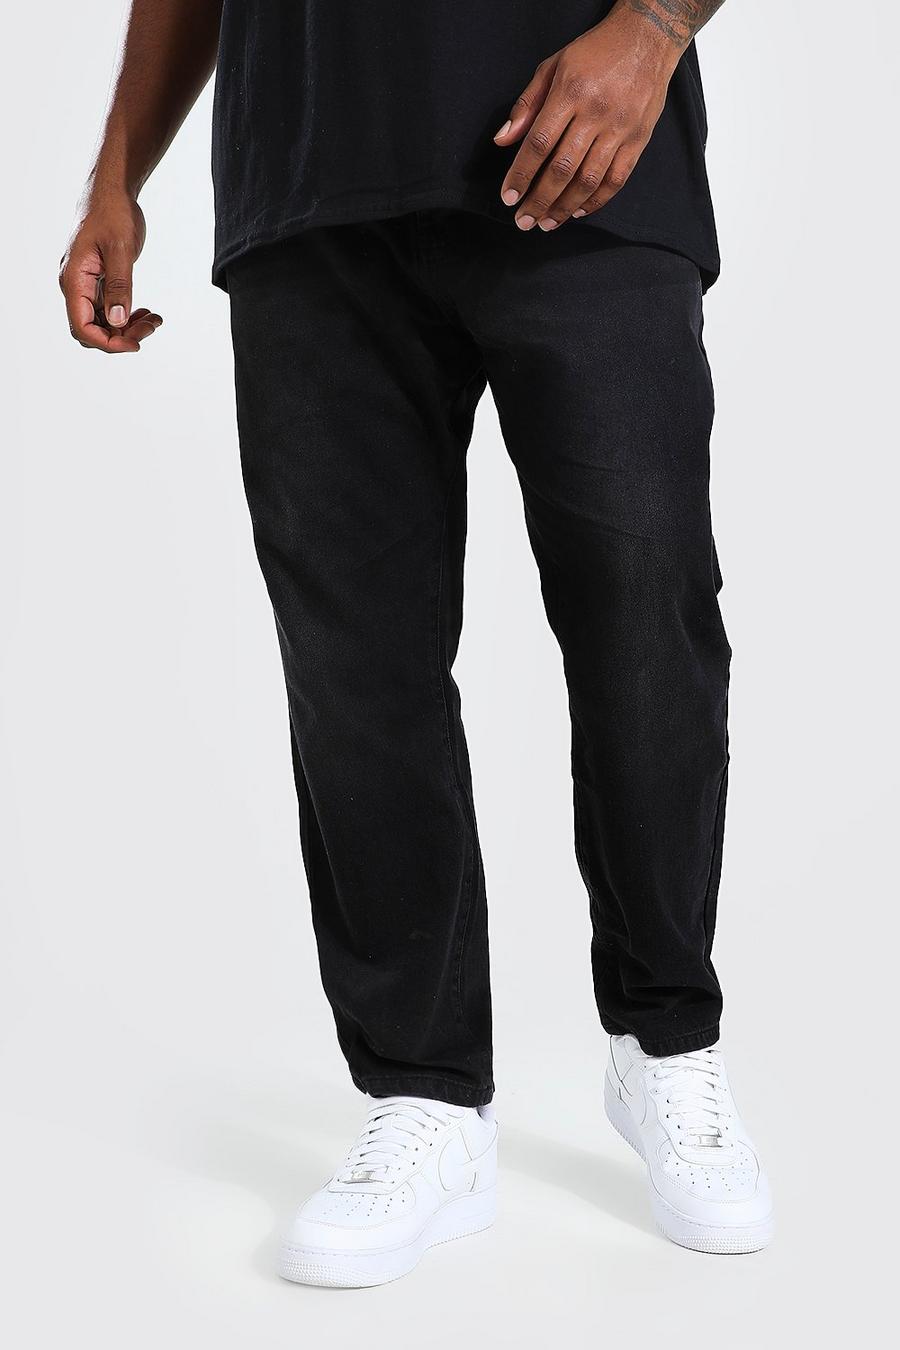 שחור דהוי ג'ינס מבד קשיח בגזרה צרה למידות גדולות